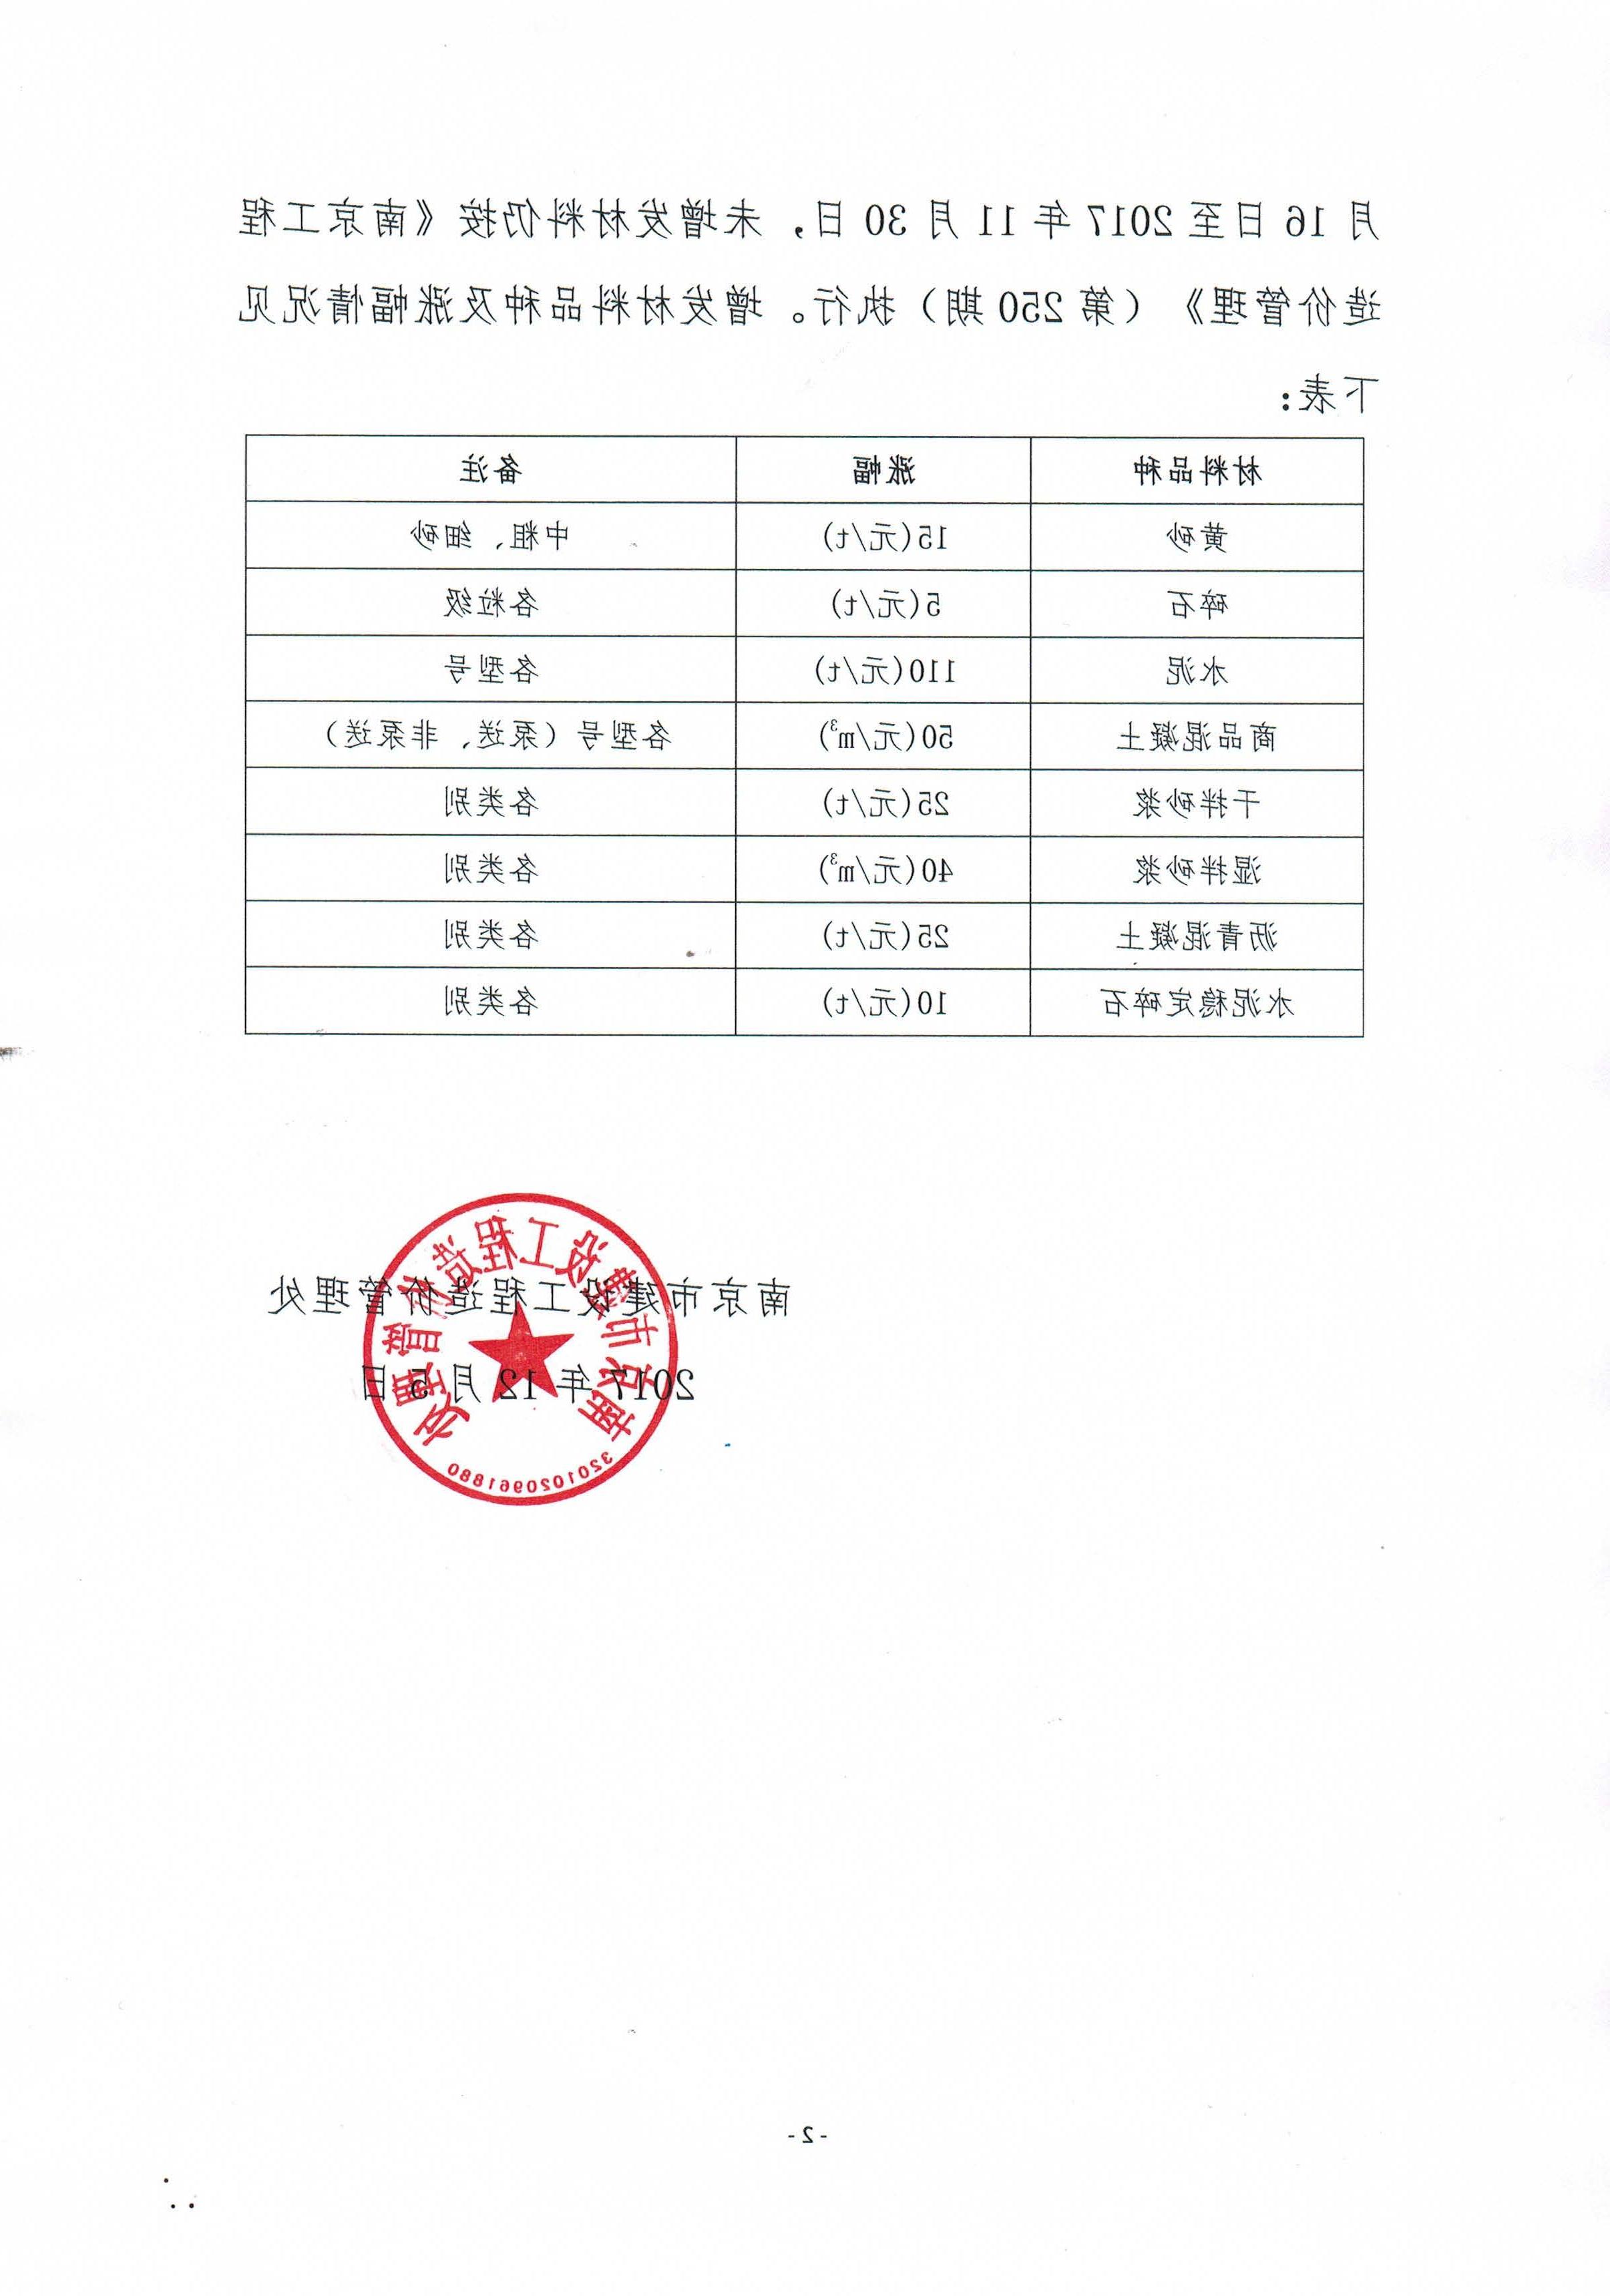 关于增发南京市部分材料市场指导价的通知